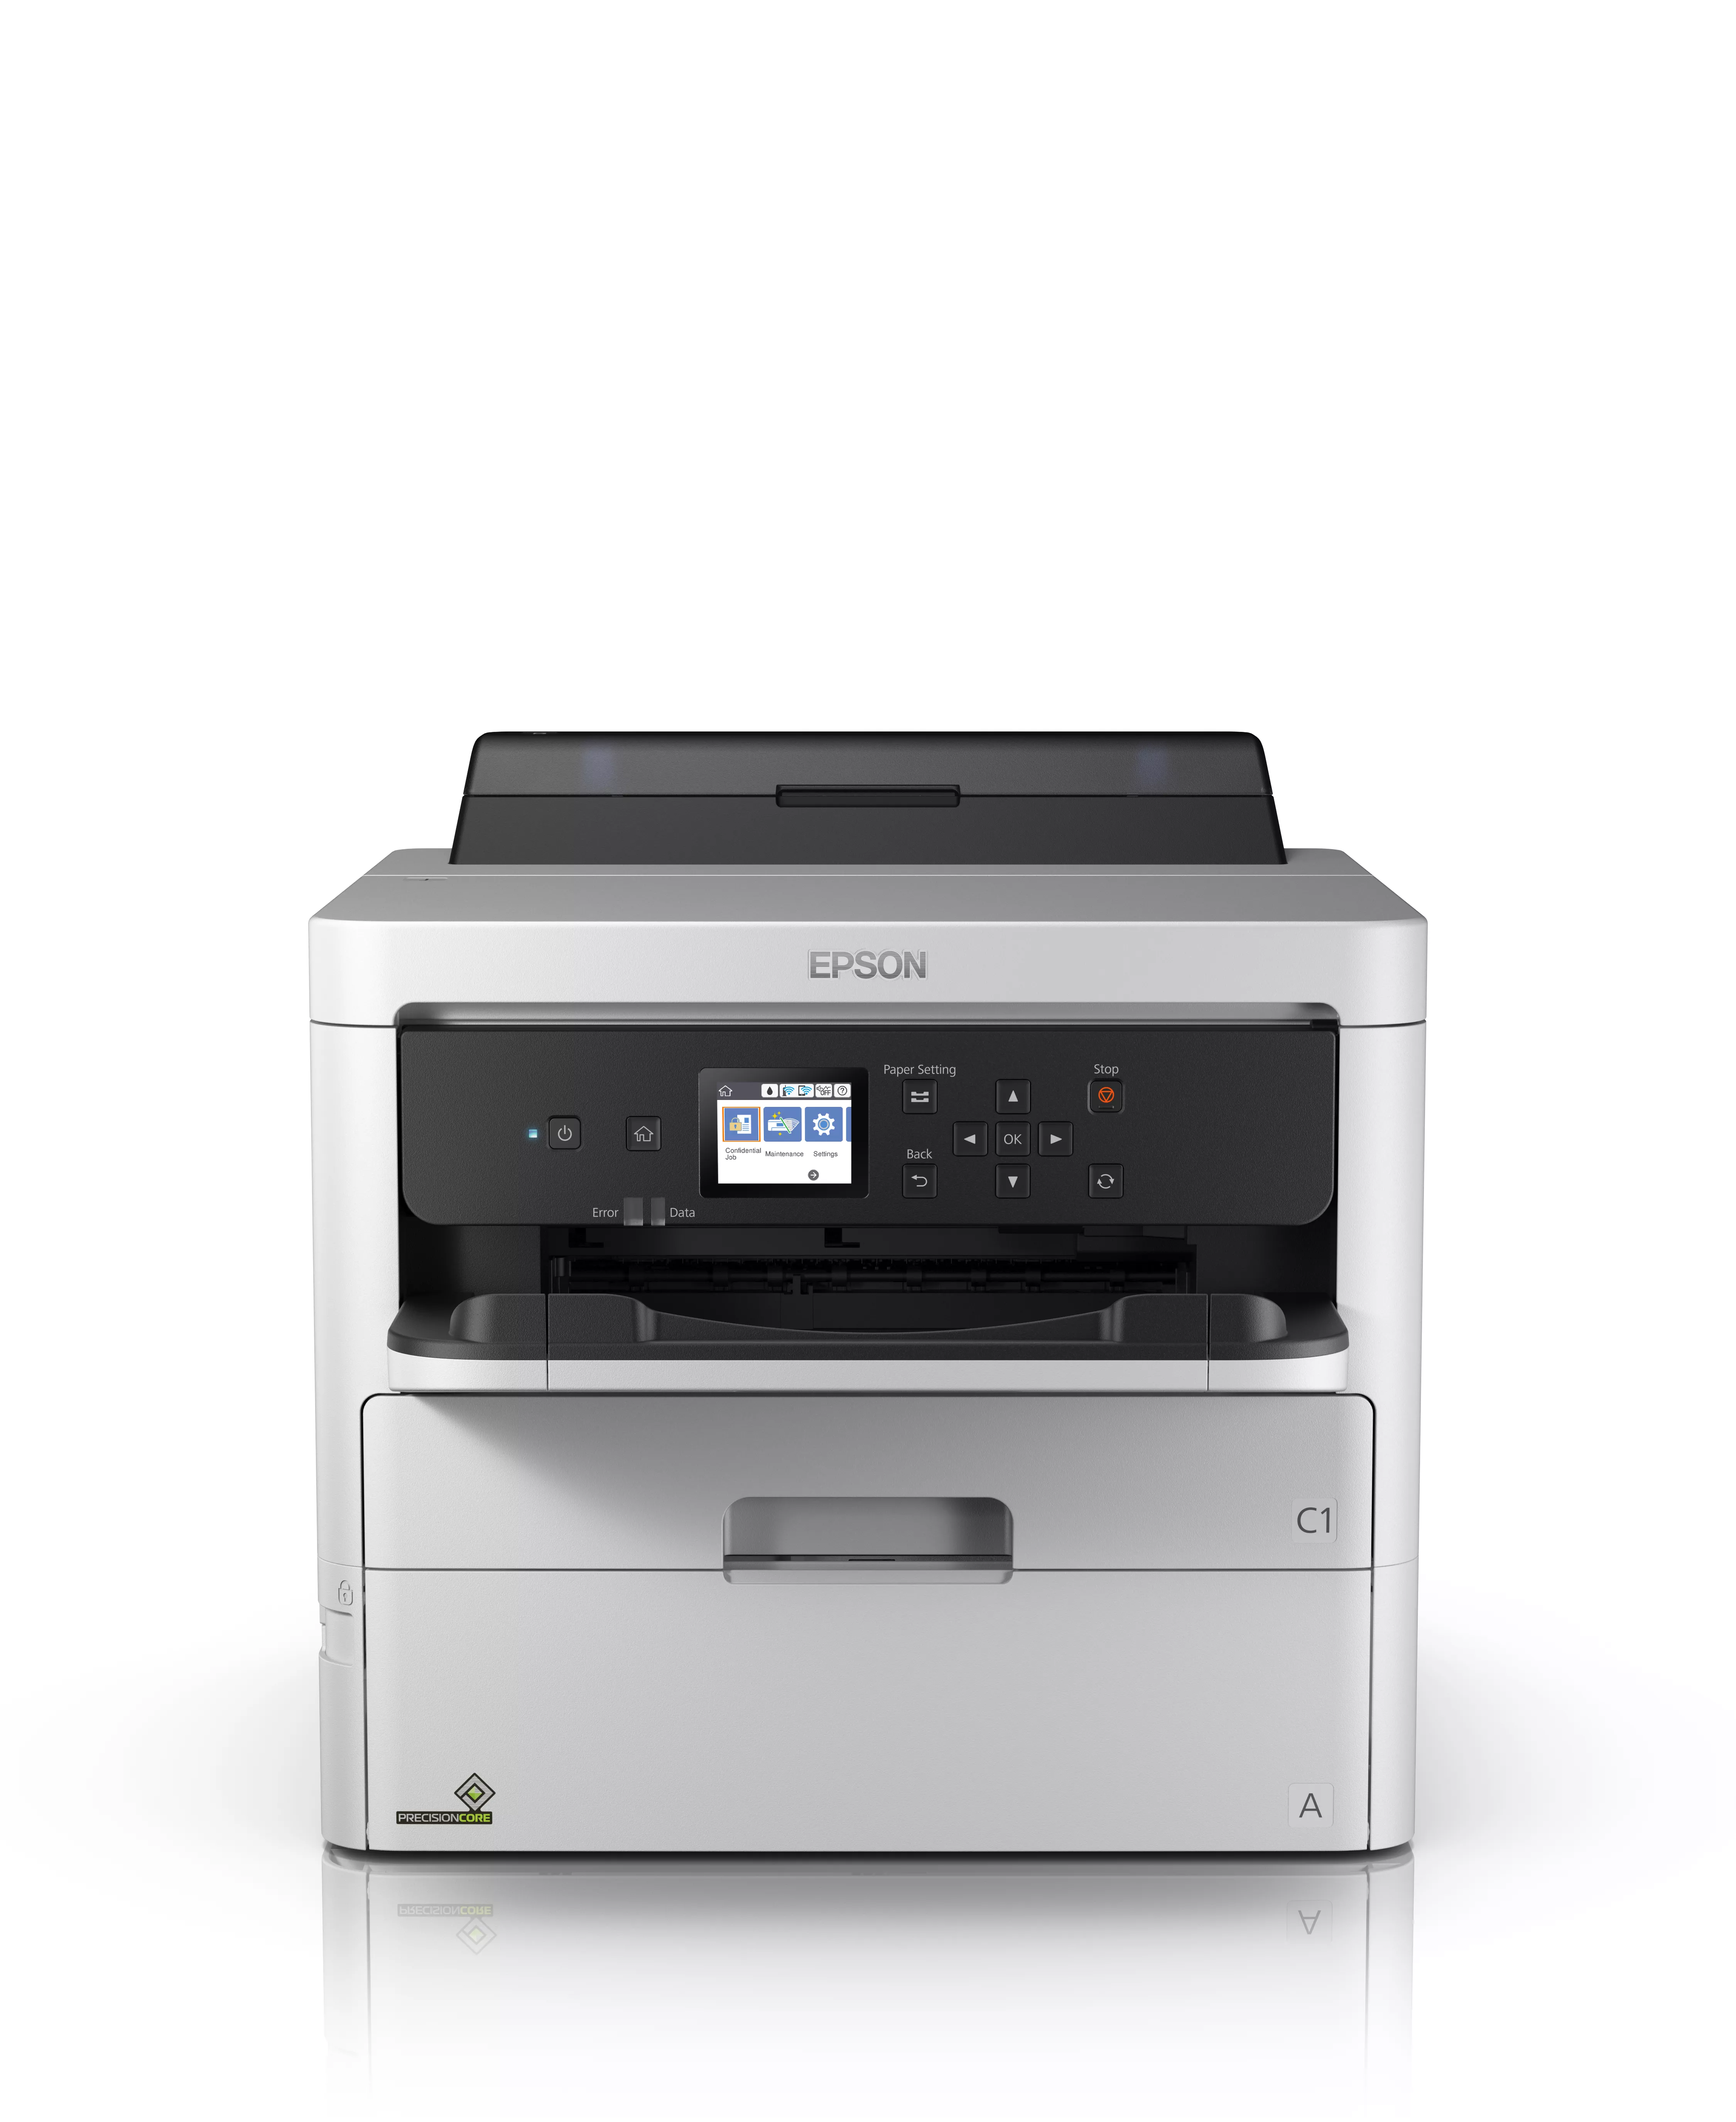 Vente EPSON WorkForce Pro WF-C529RDW Printer colour Duplex au meilleur prix